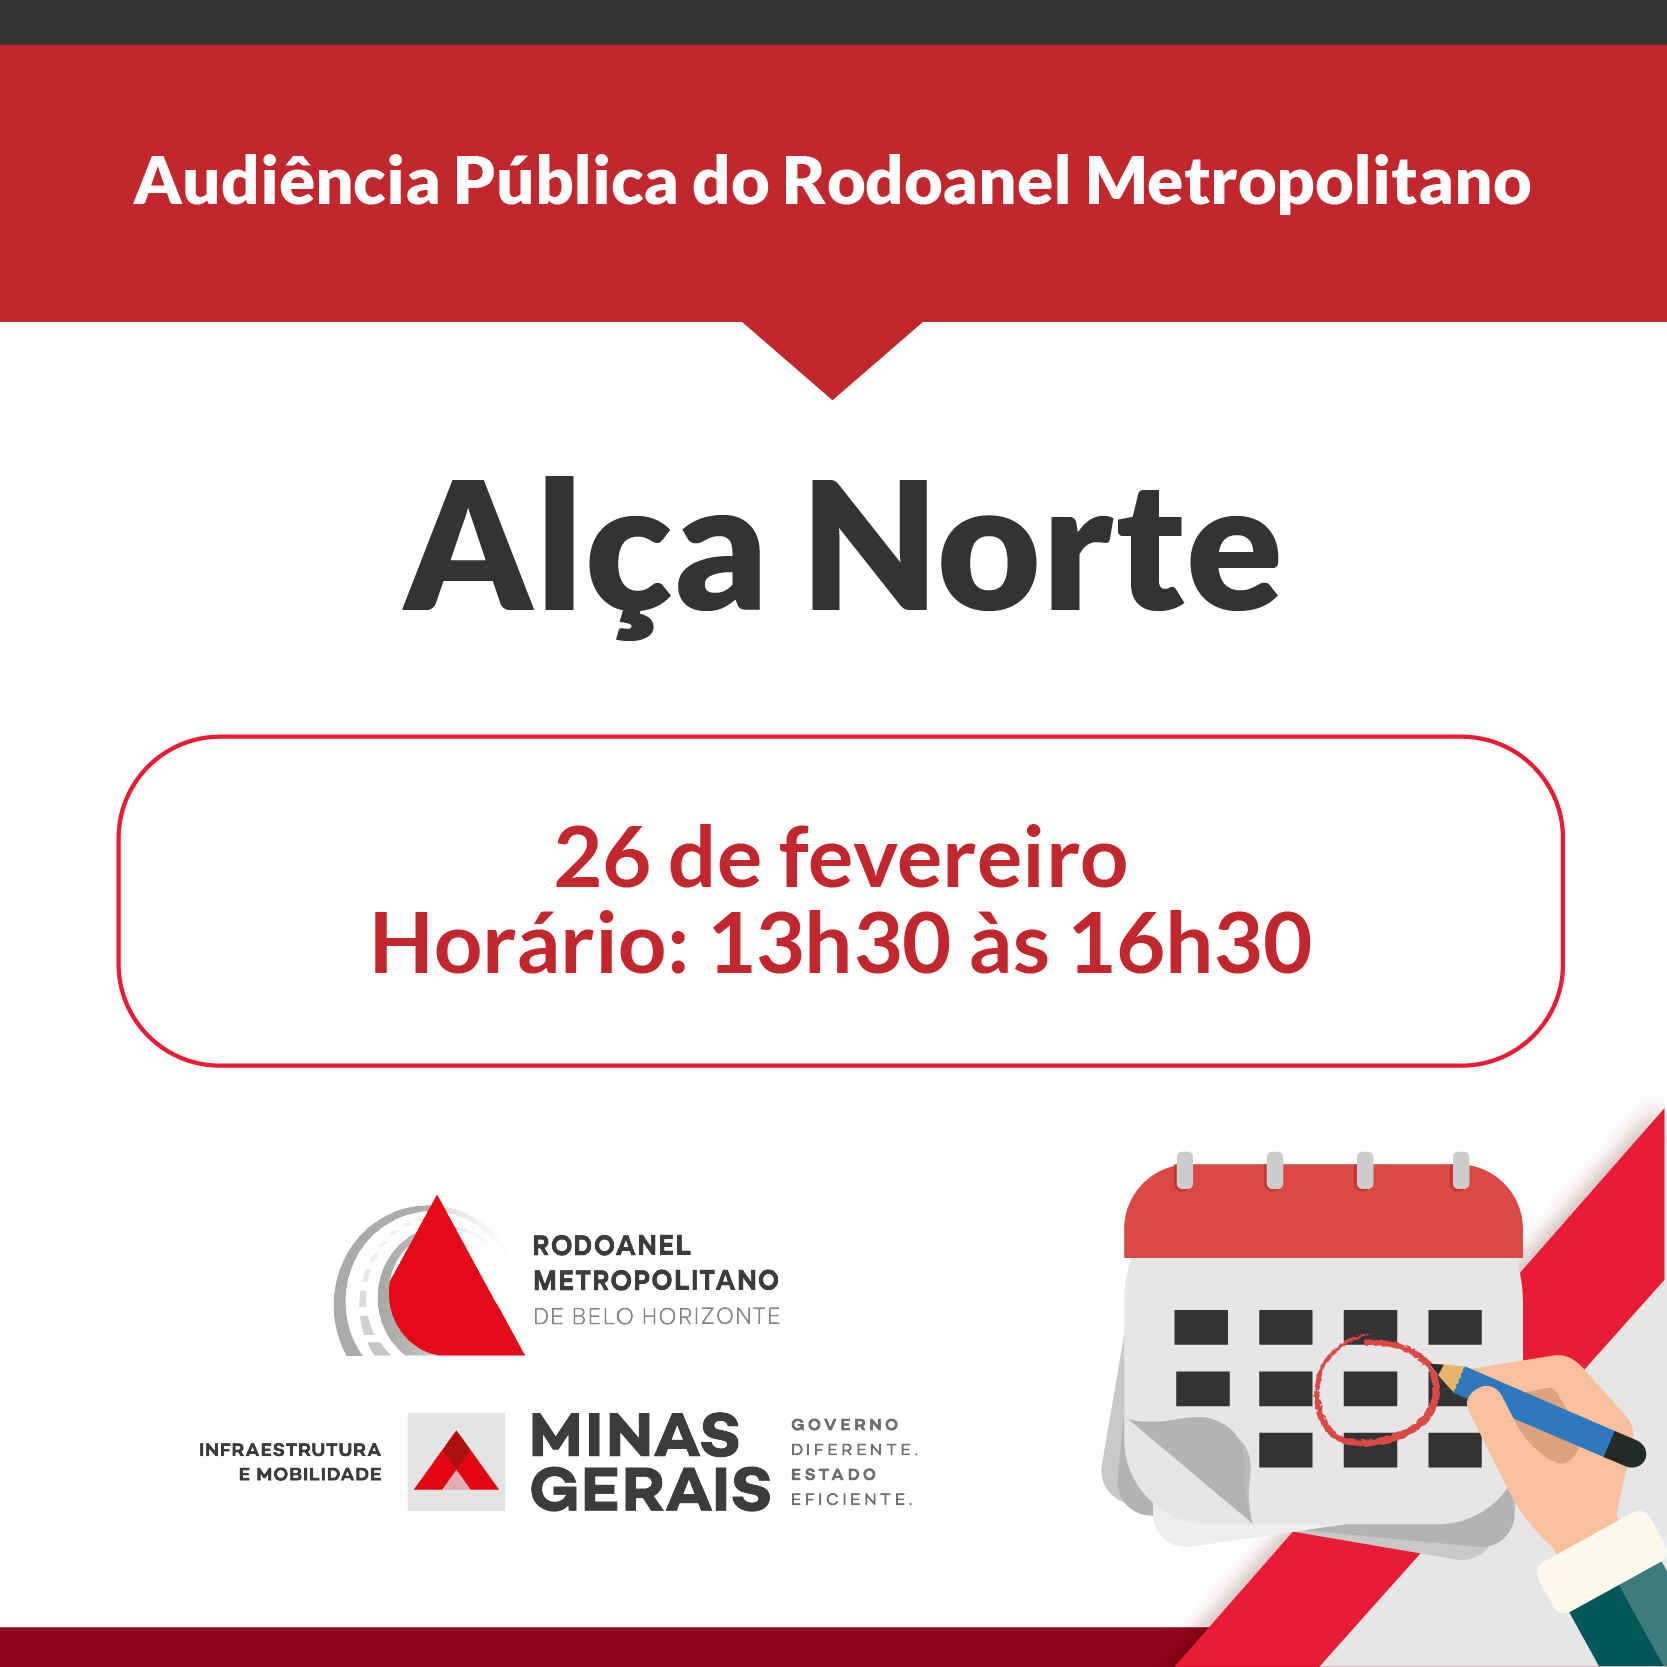 Primeira Audiência Pública do Rodoanel Metropolitano será realizada nesta sexta-feira (26/2)